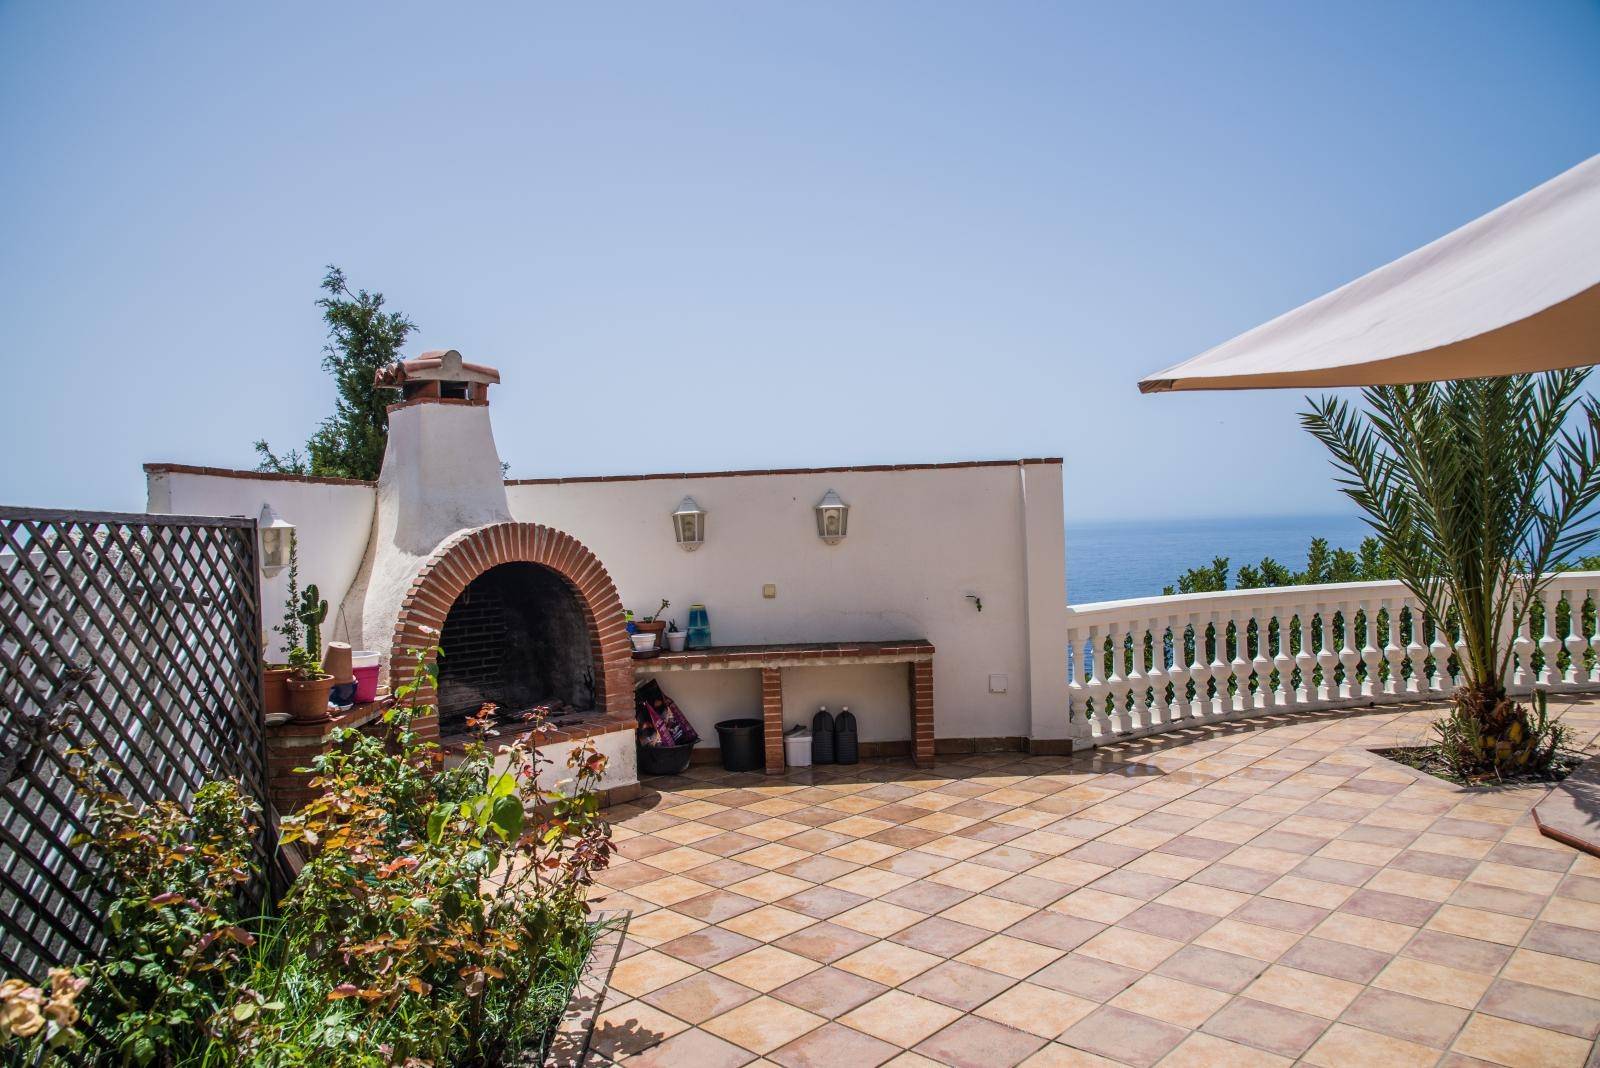 Villa for sale in Urb. Alfamar in Salobreña with sea views